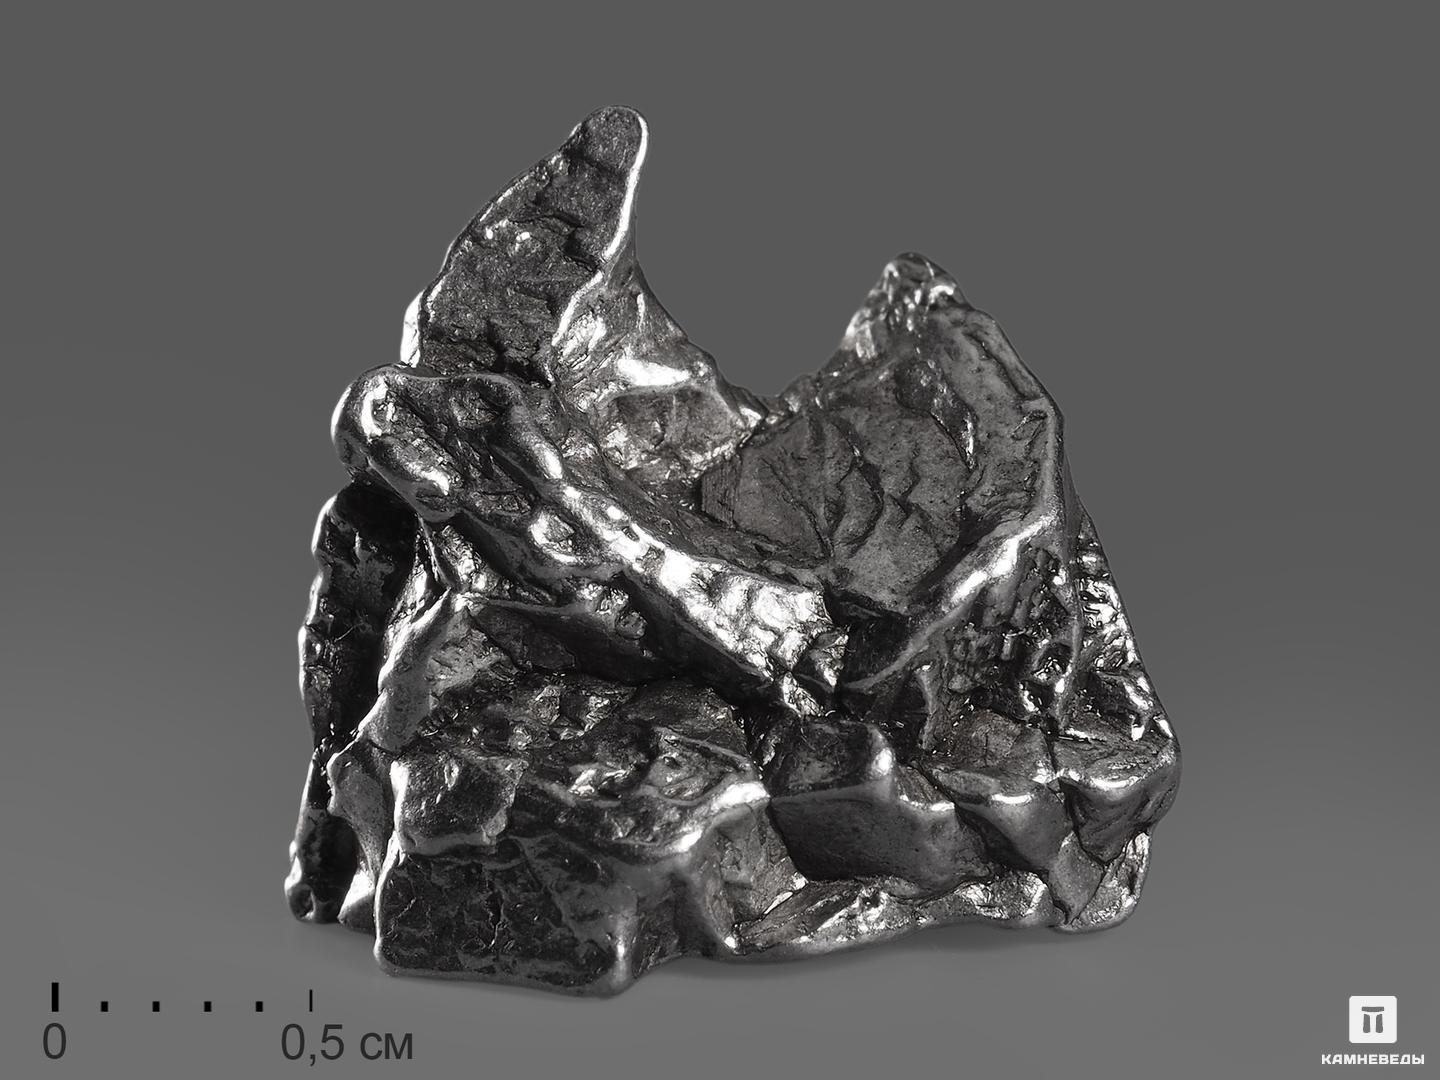 Метеорит Кампо-дель-Сьело, осколок 2-3,5 см (8-10 г) метеорит кампо дель сьело осколок 2 5 3 5 см 21 23 г